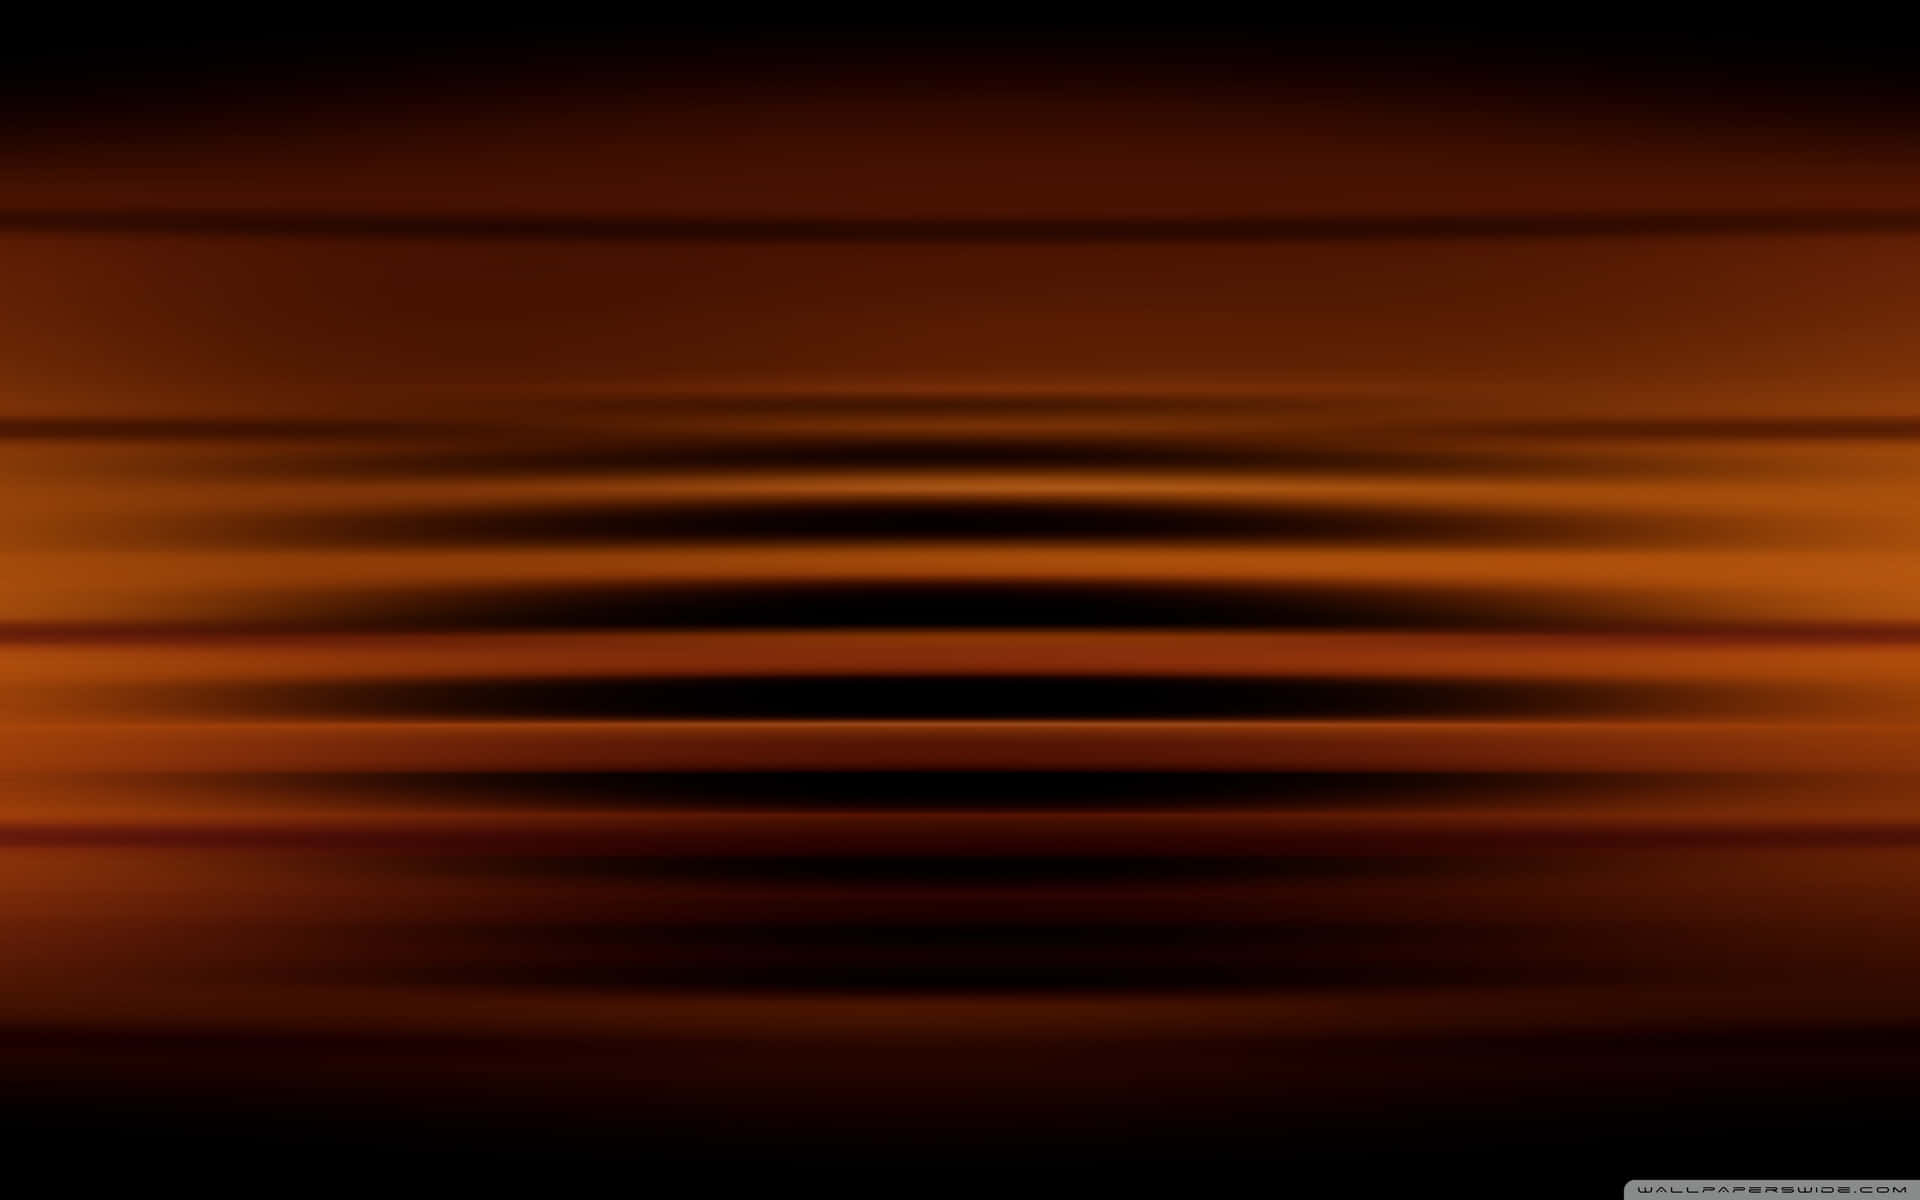 plain dark orange background